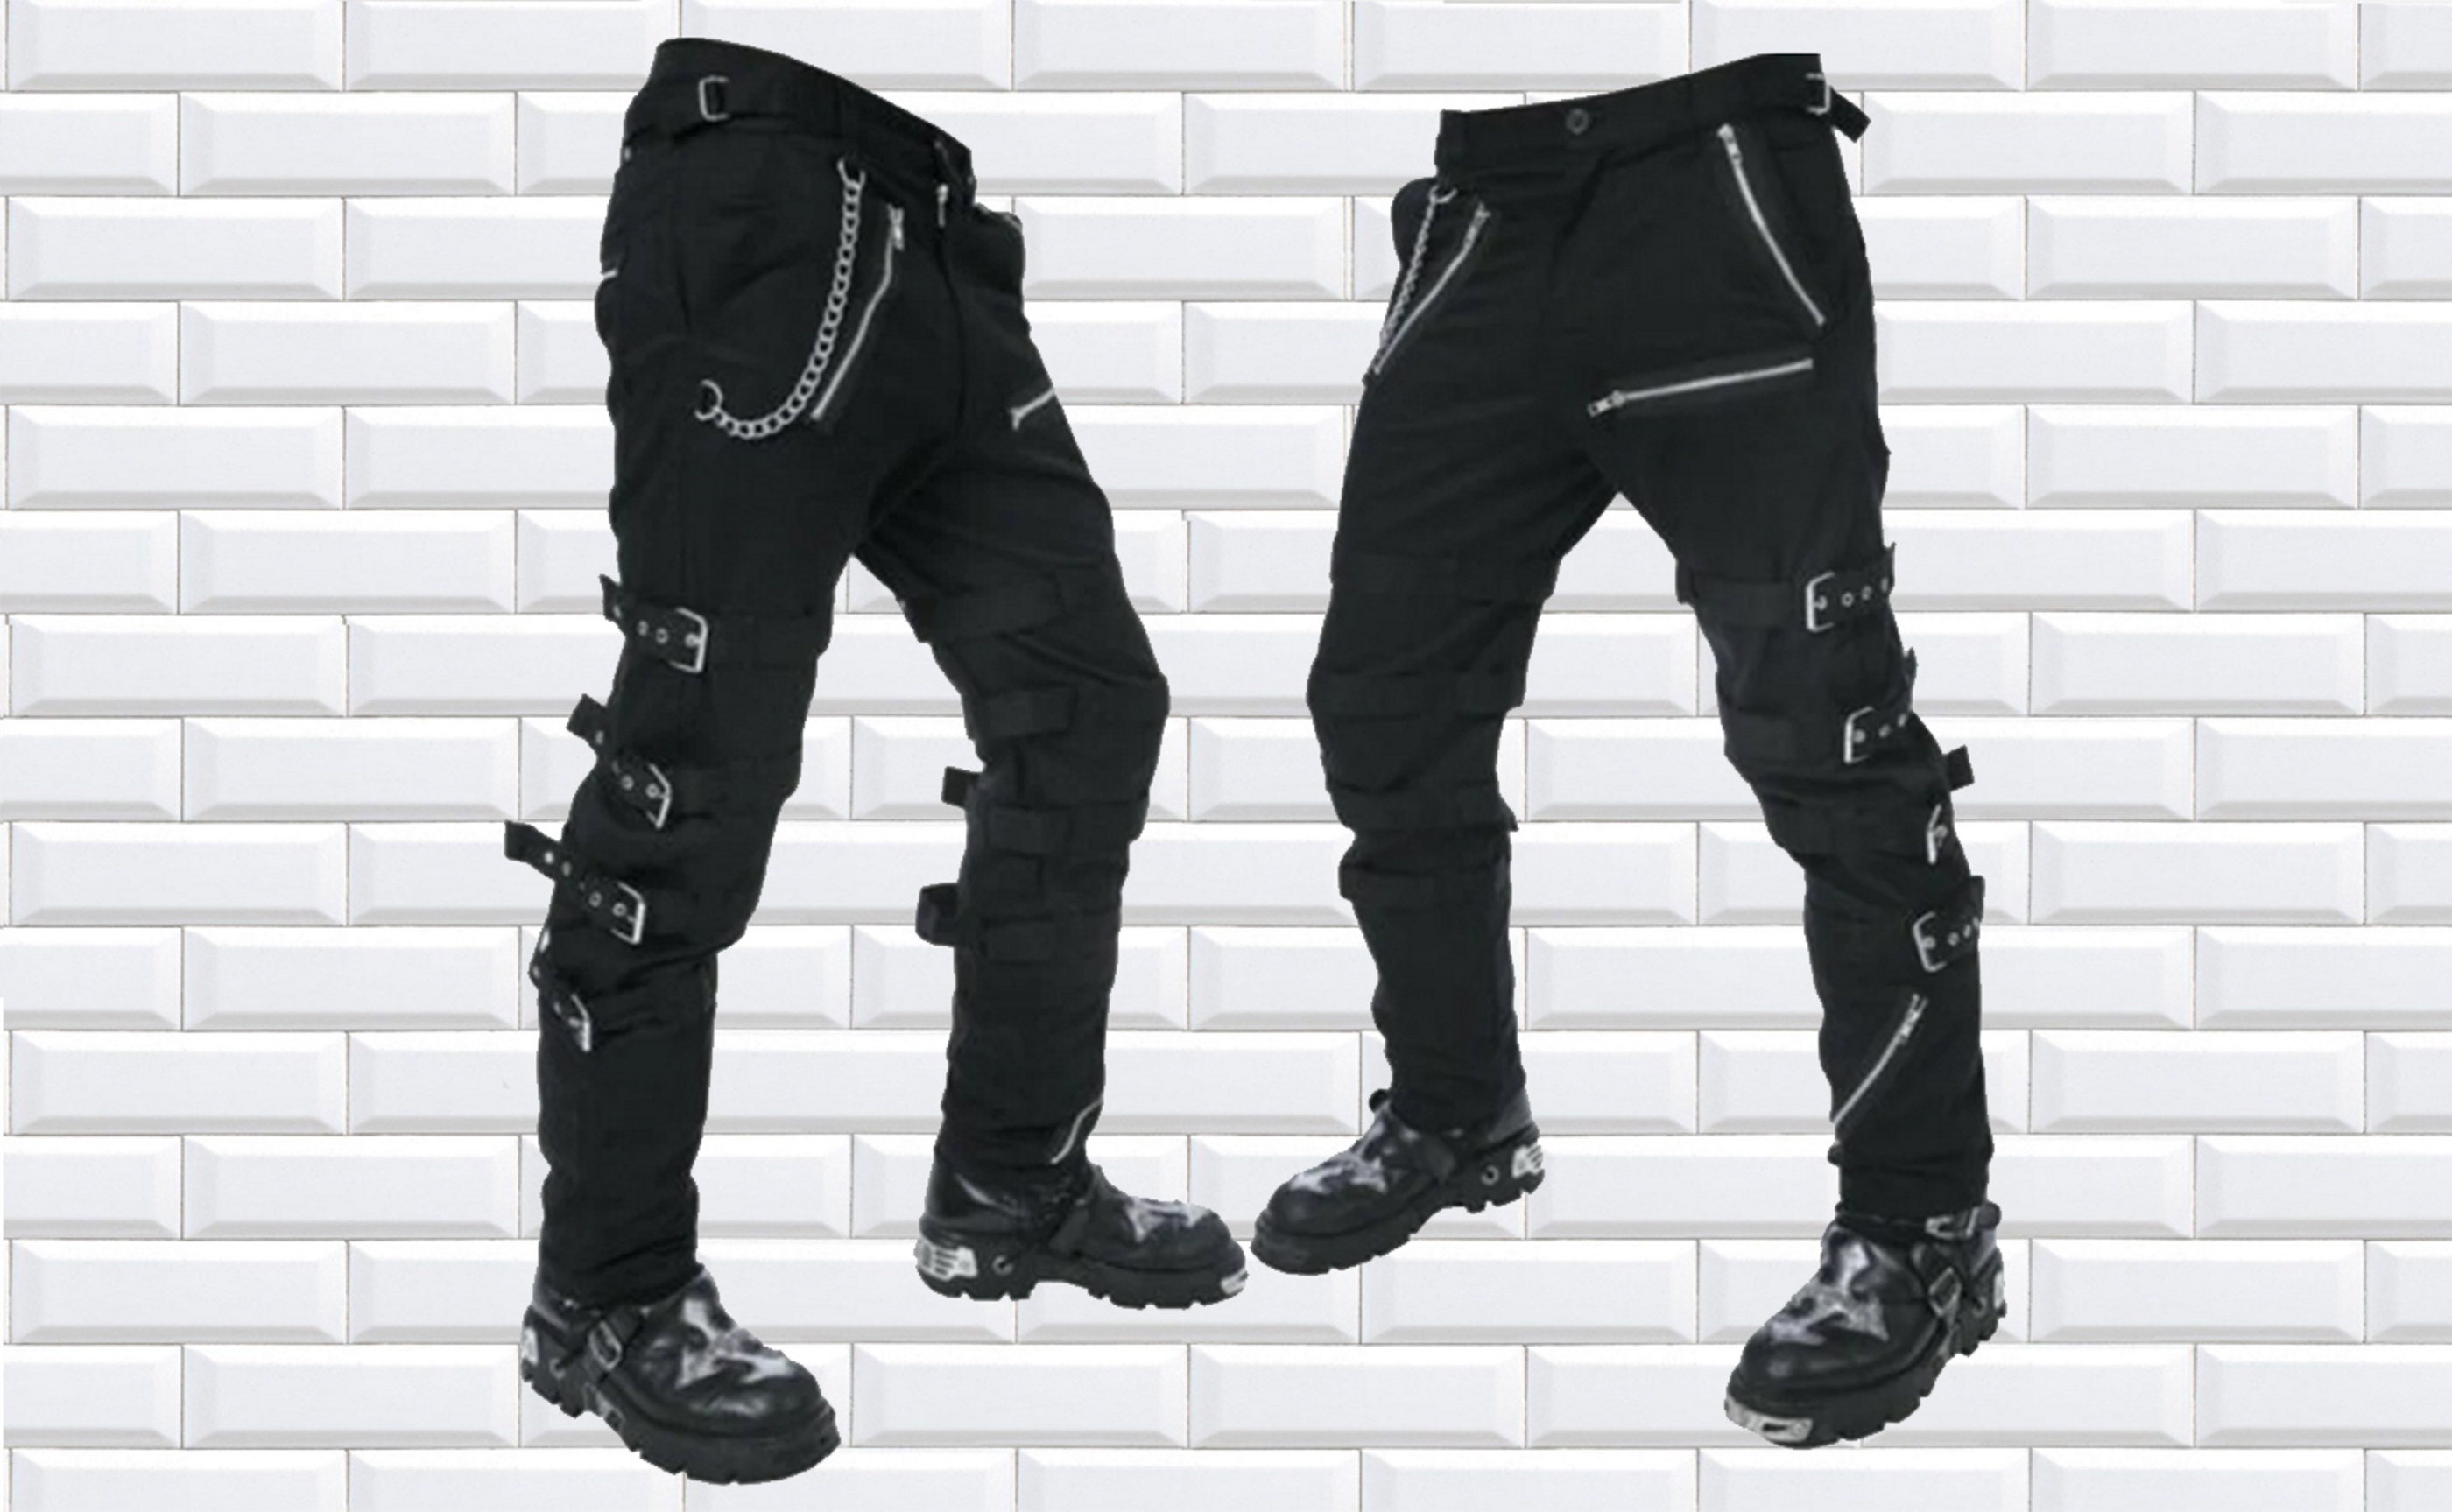 1pc Silver Color Multi-layer Detachable Pants Chain For Men